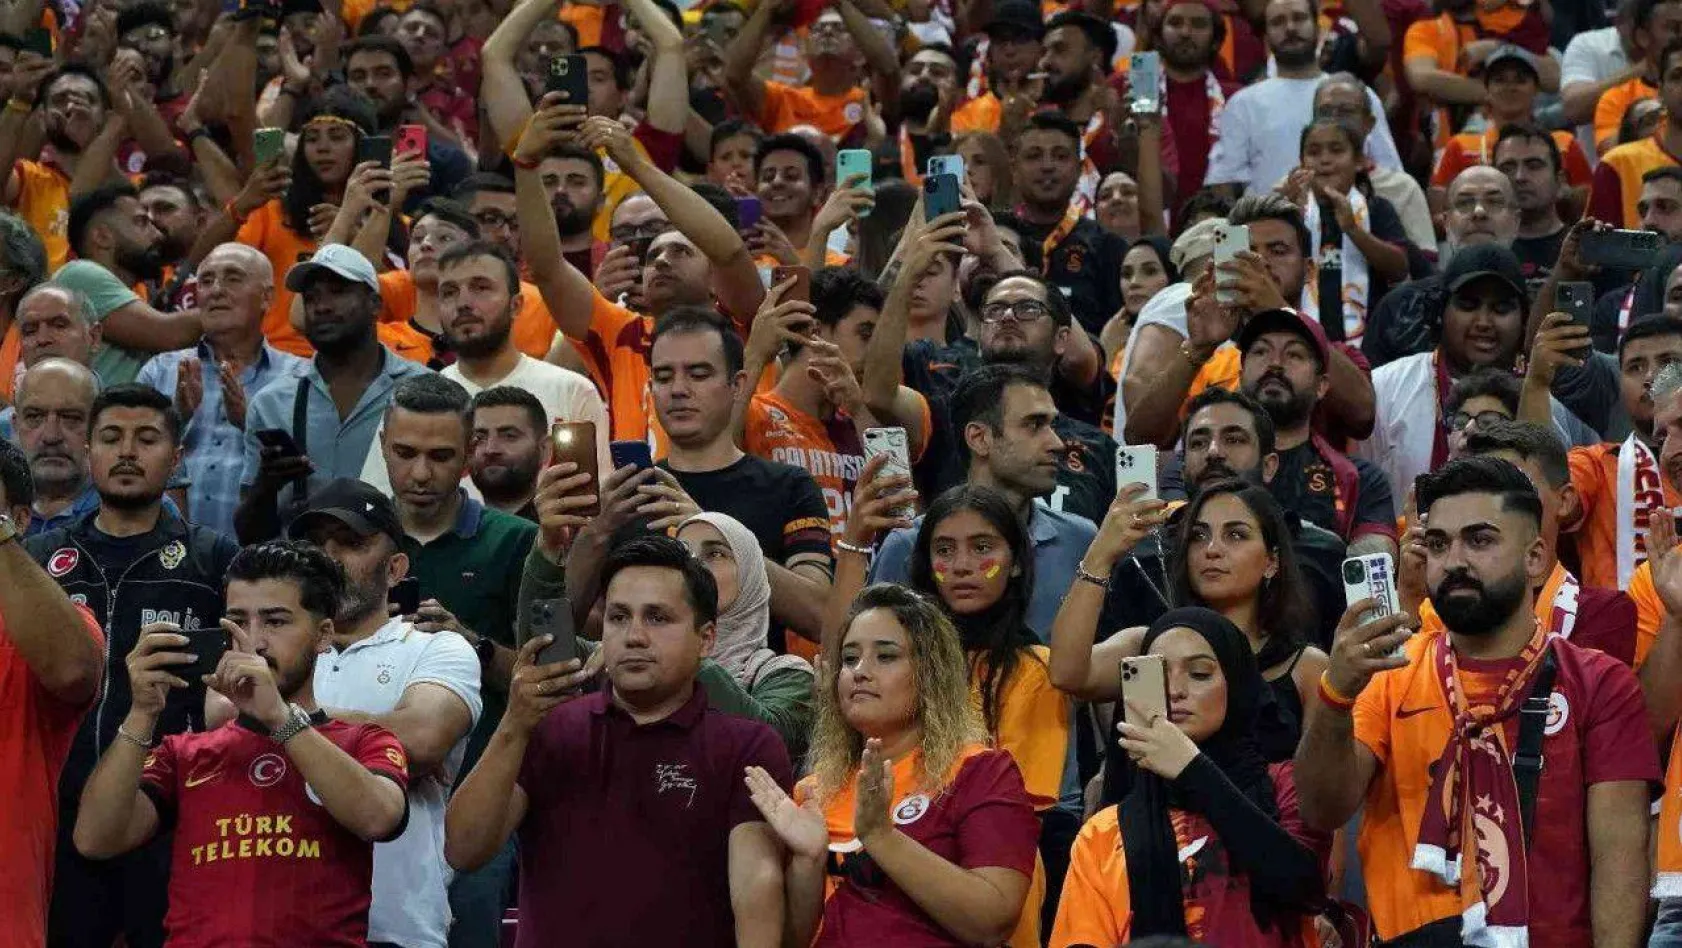 Galatasaray - Giresunspor maçını 45 bin 484 taraftar izledi